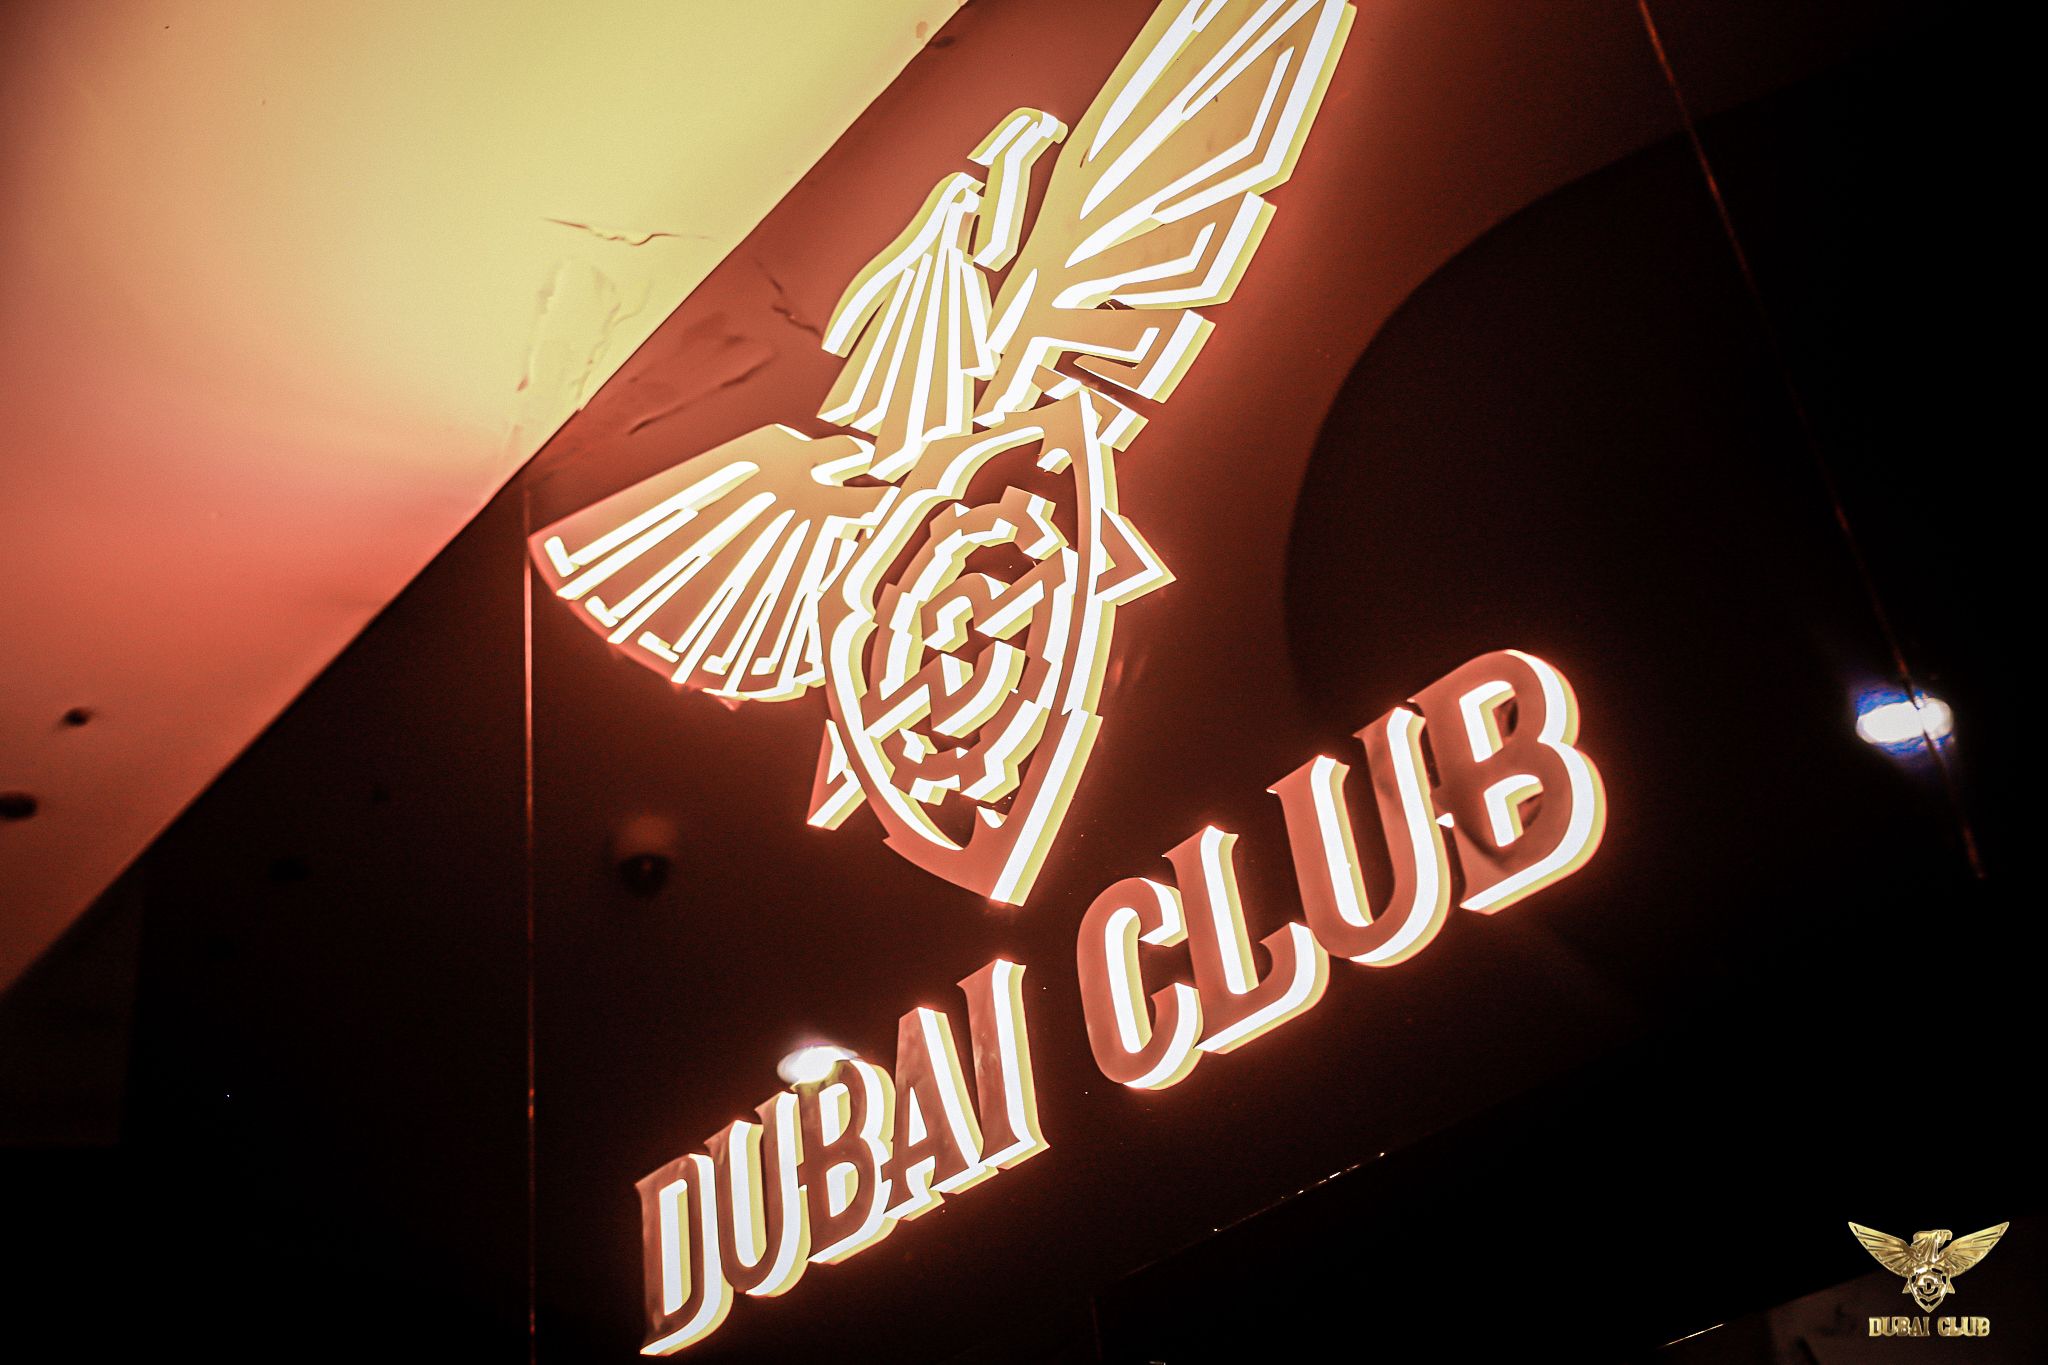 DUBAI CLUB - 117 Xuân Thủy